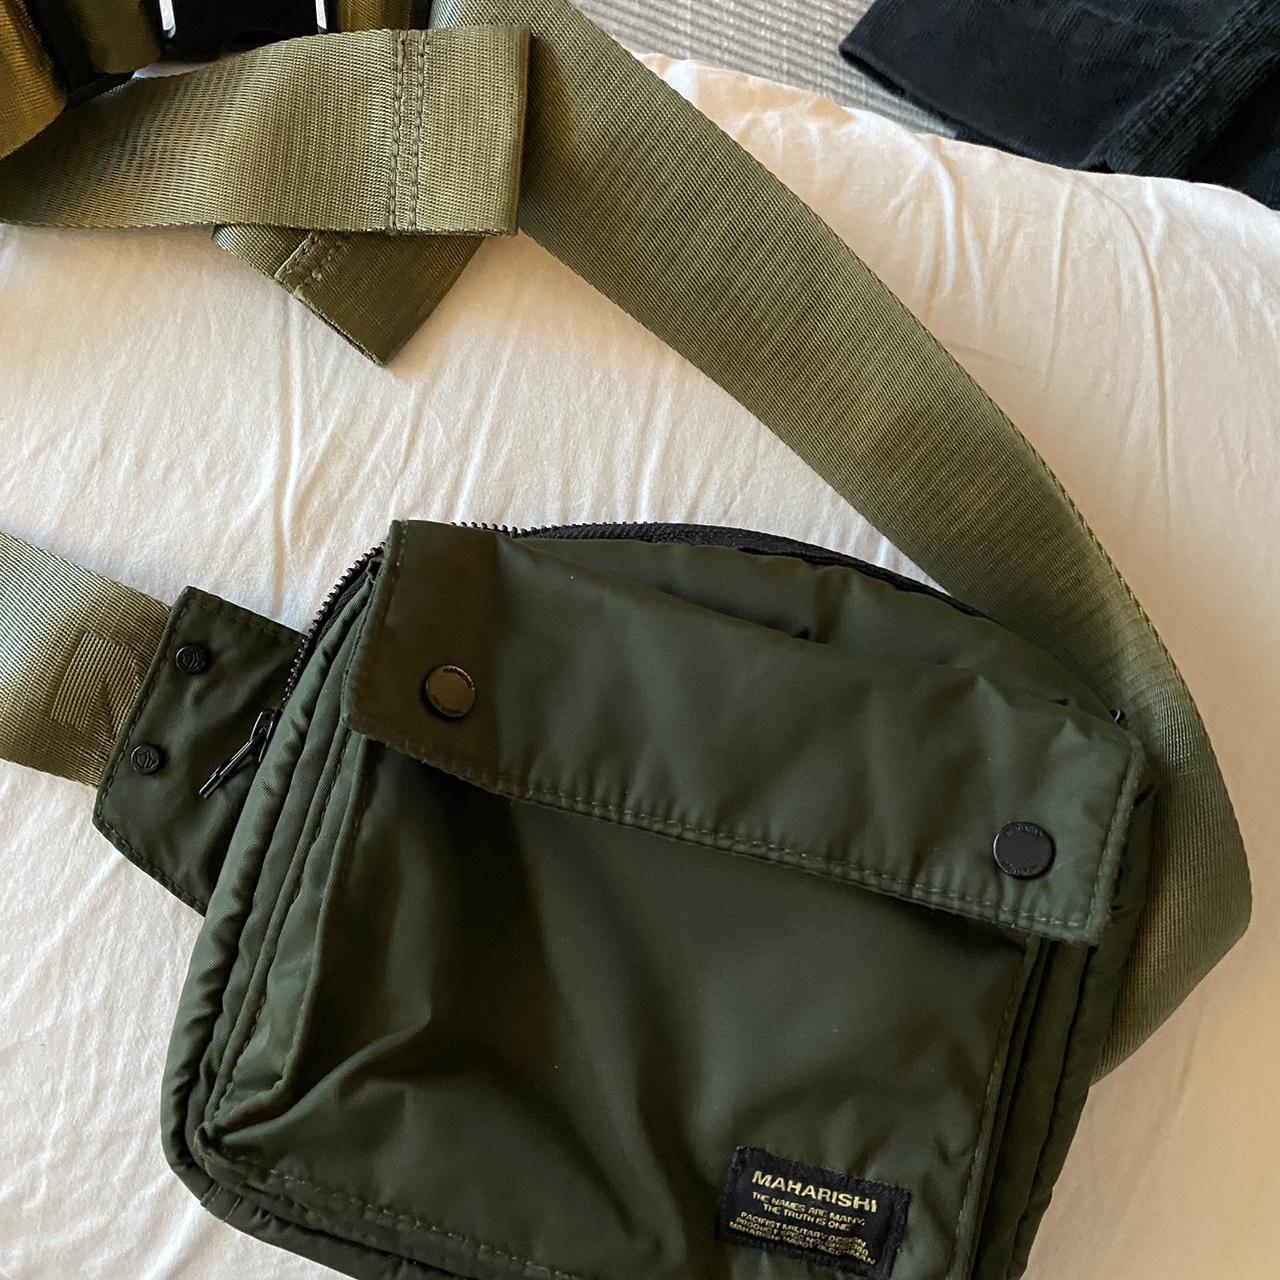 Maharishi - shoulder bag Fits literally everything - Depop